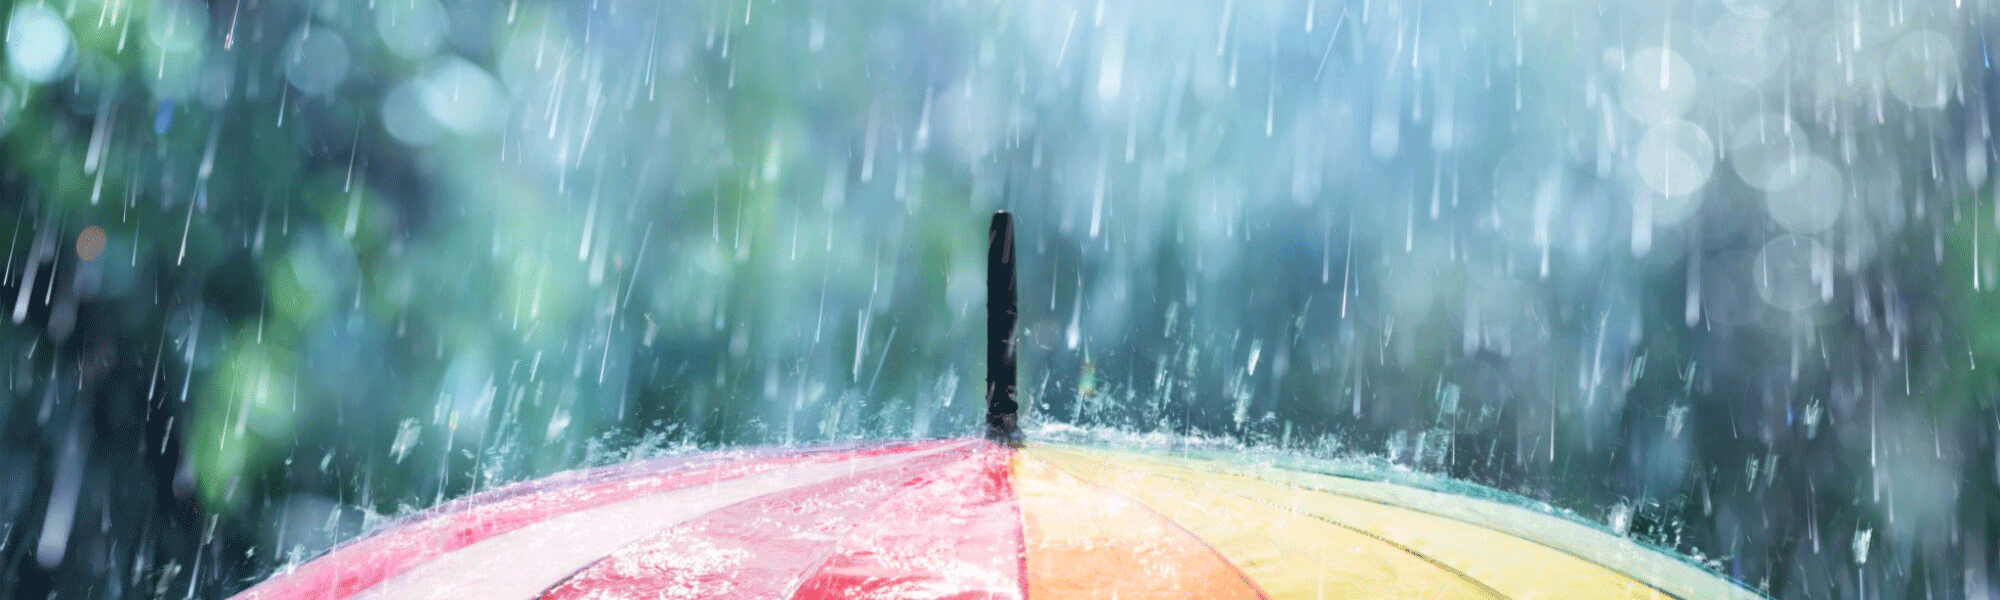 image of rain umbrella